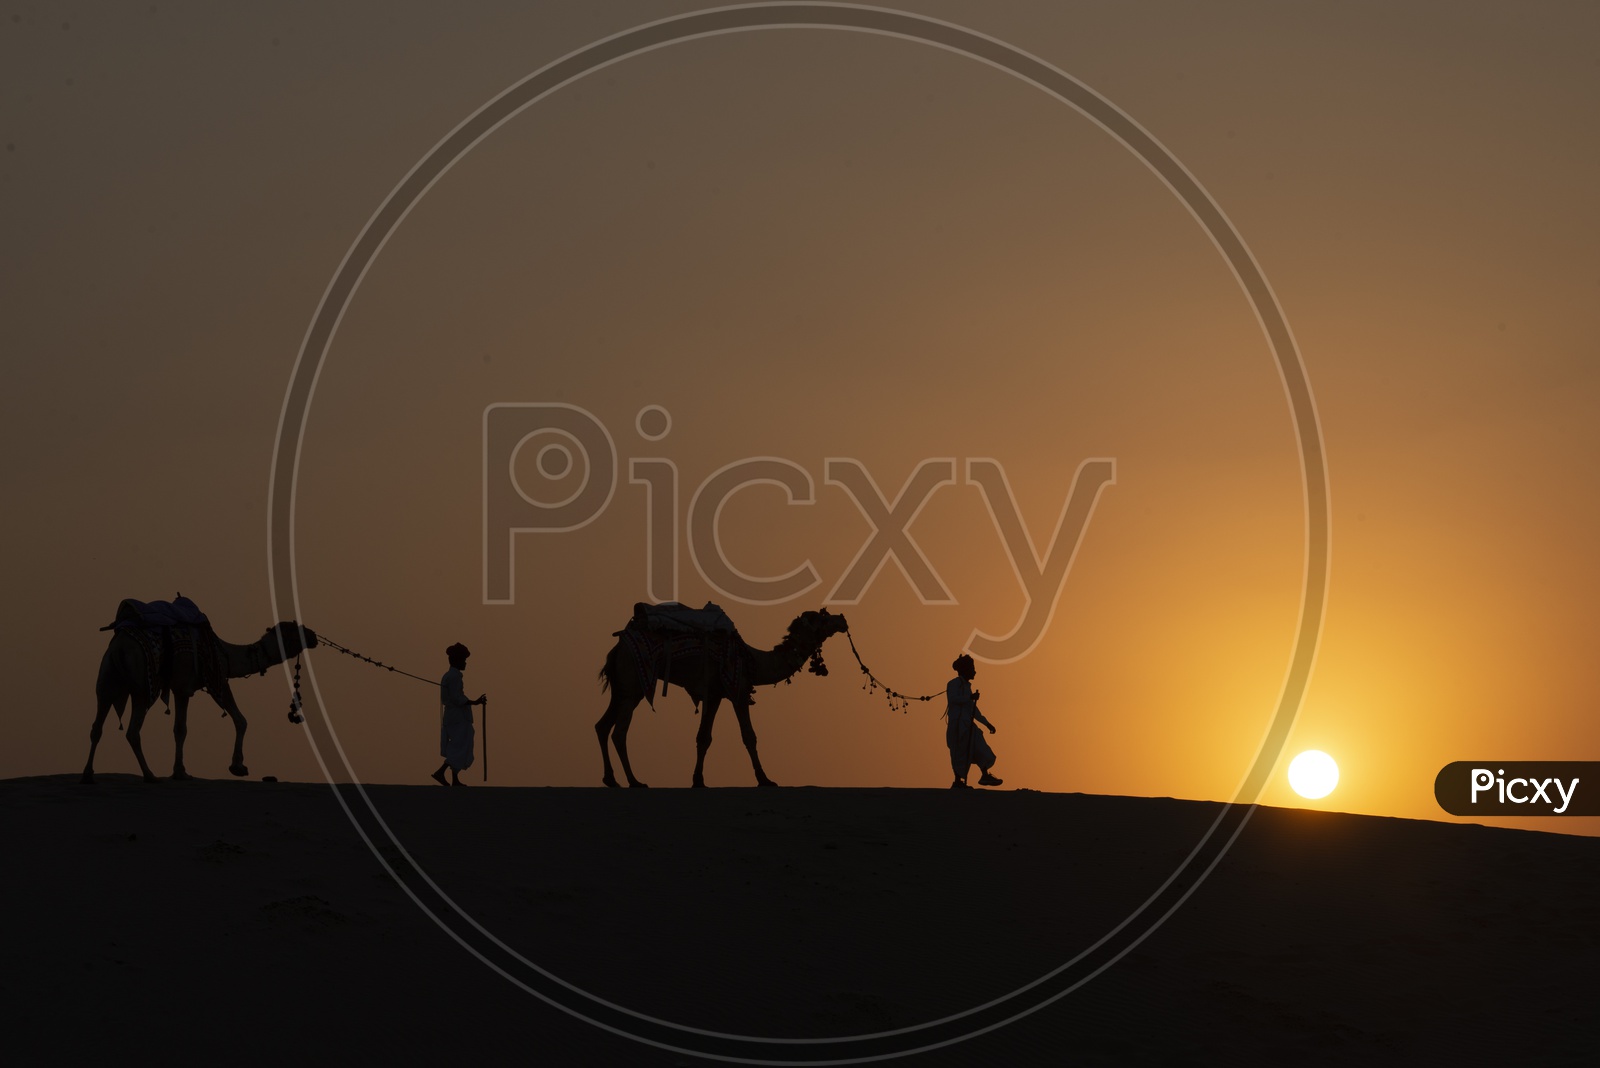 Camels in Desert